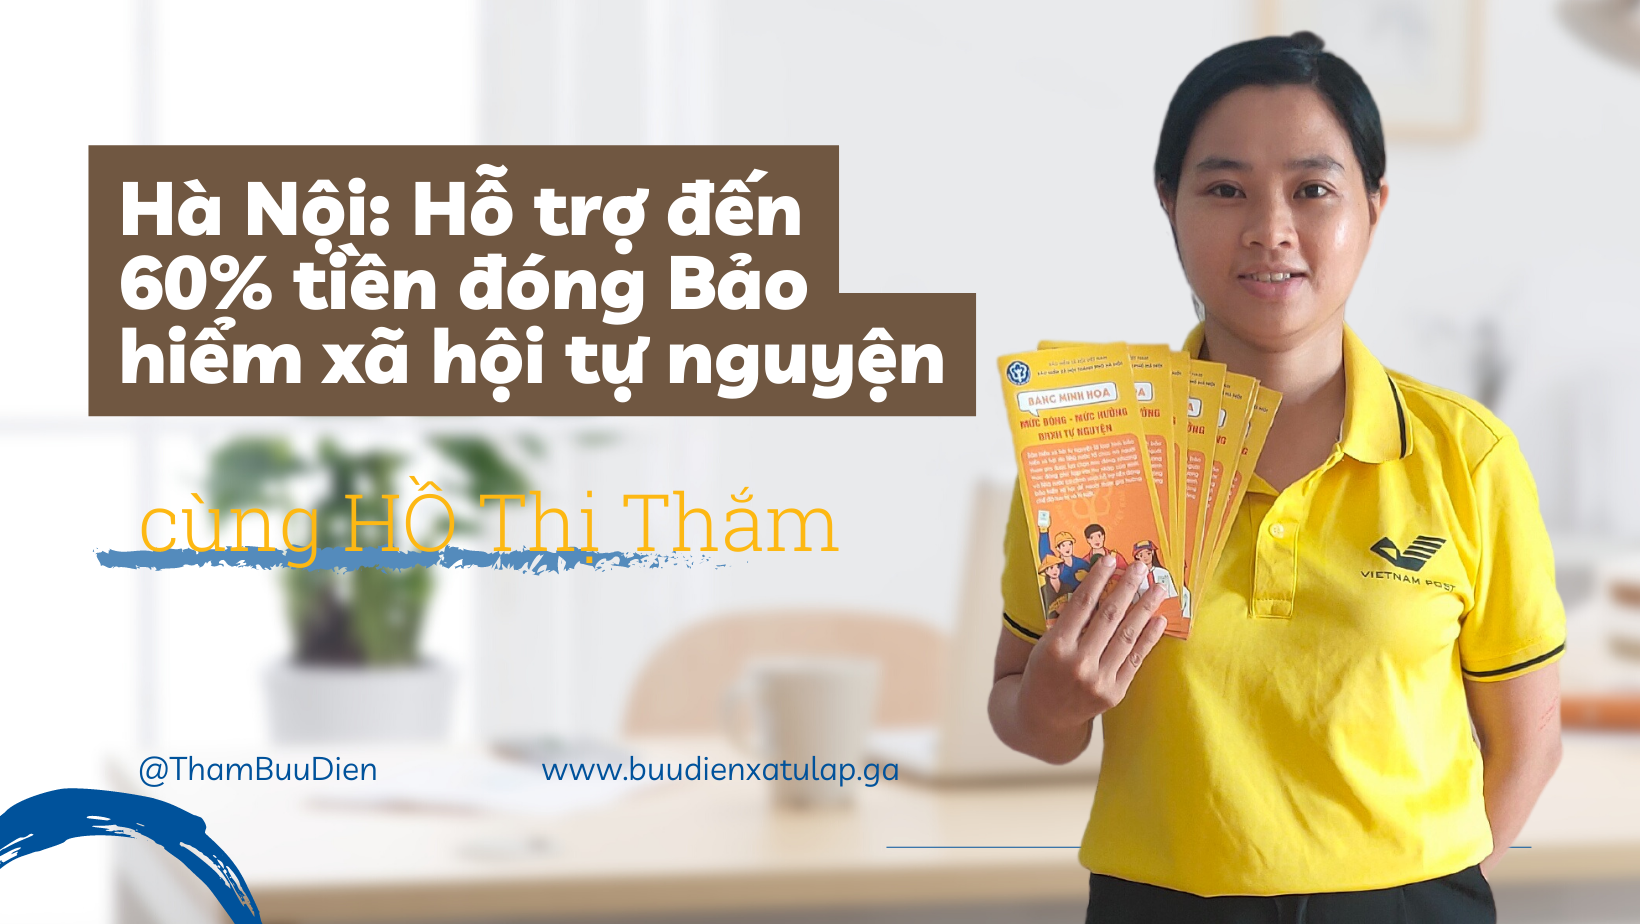 Cover Image for Hà Nội: Hỗ trợ đến 60% tiền đóng Bảo hiểm xã hội tự nguyện